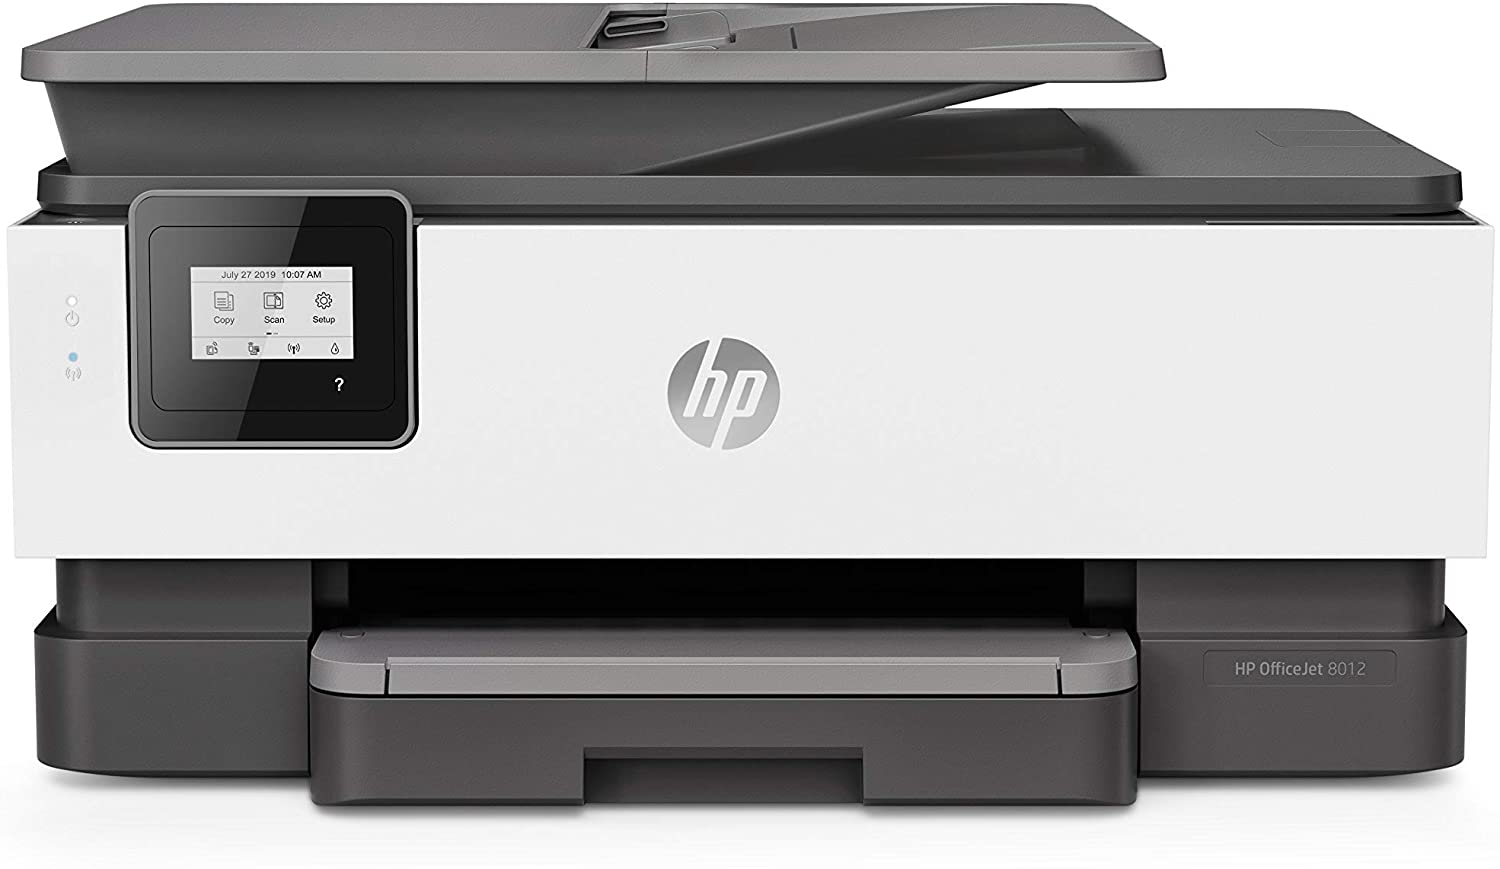 Hewlett-Packard OfficeJet 8012 Wireless All-in-One